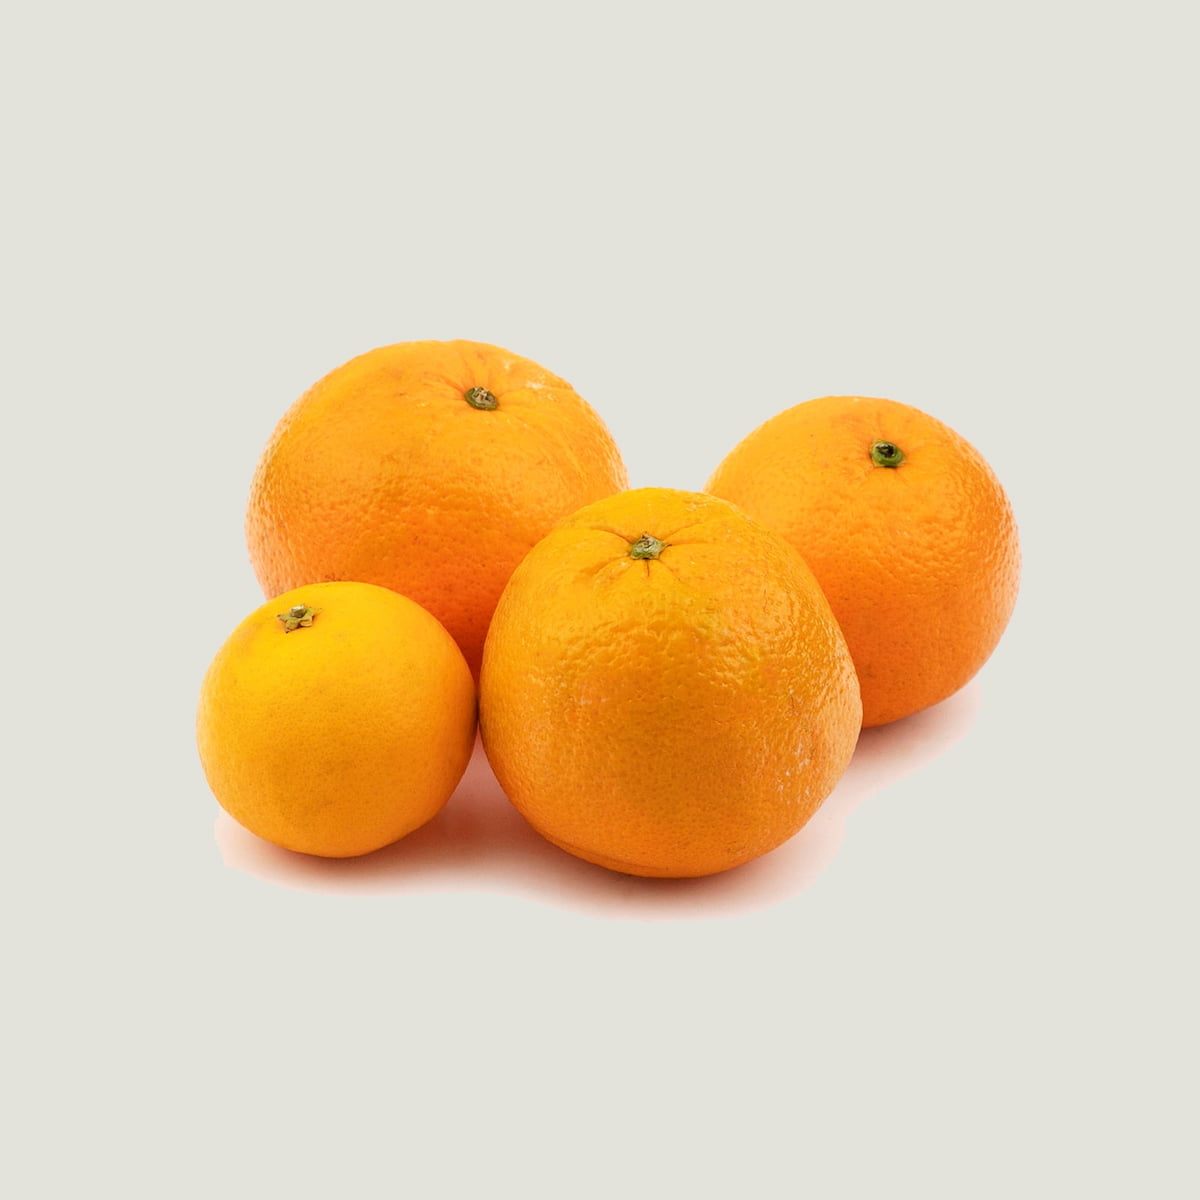 پرتقال کوچک شمالی